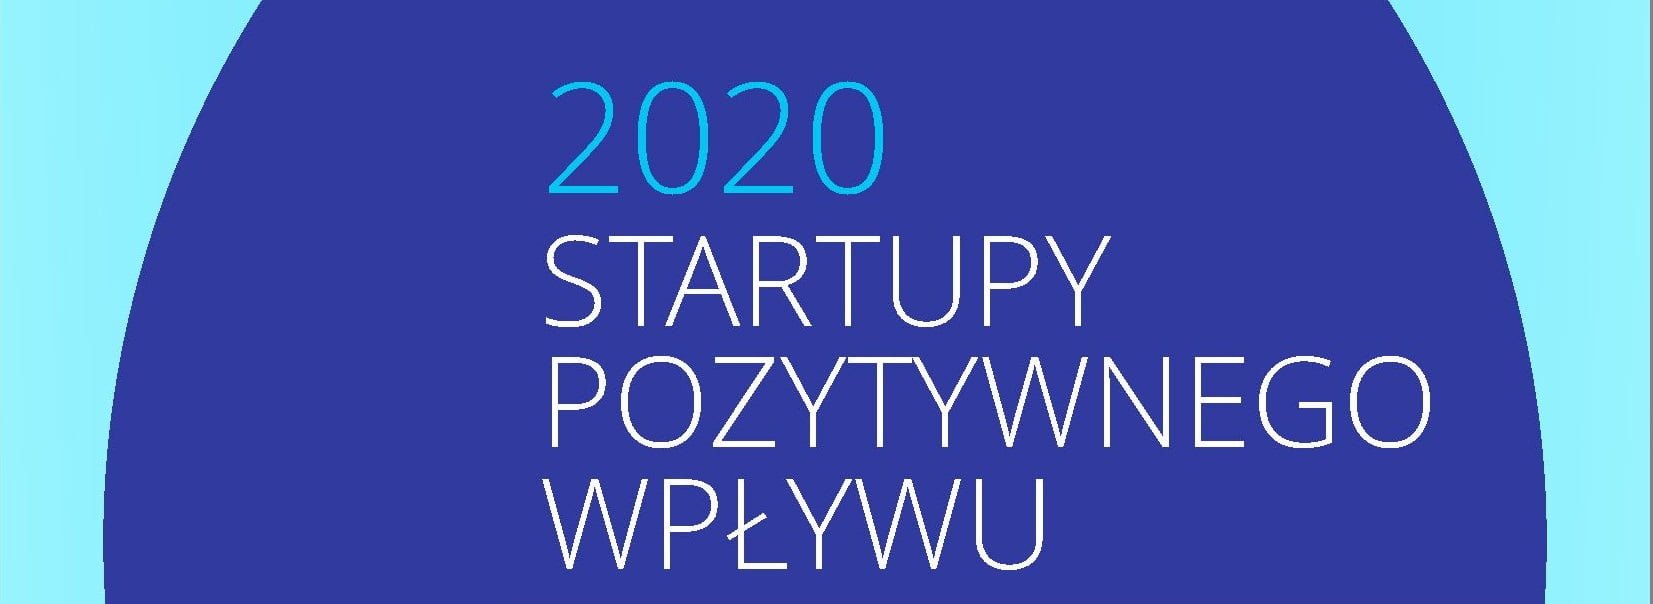 Startupy pozytywnego Wpływu 2020